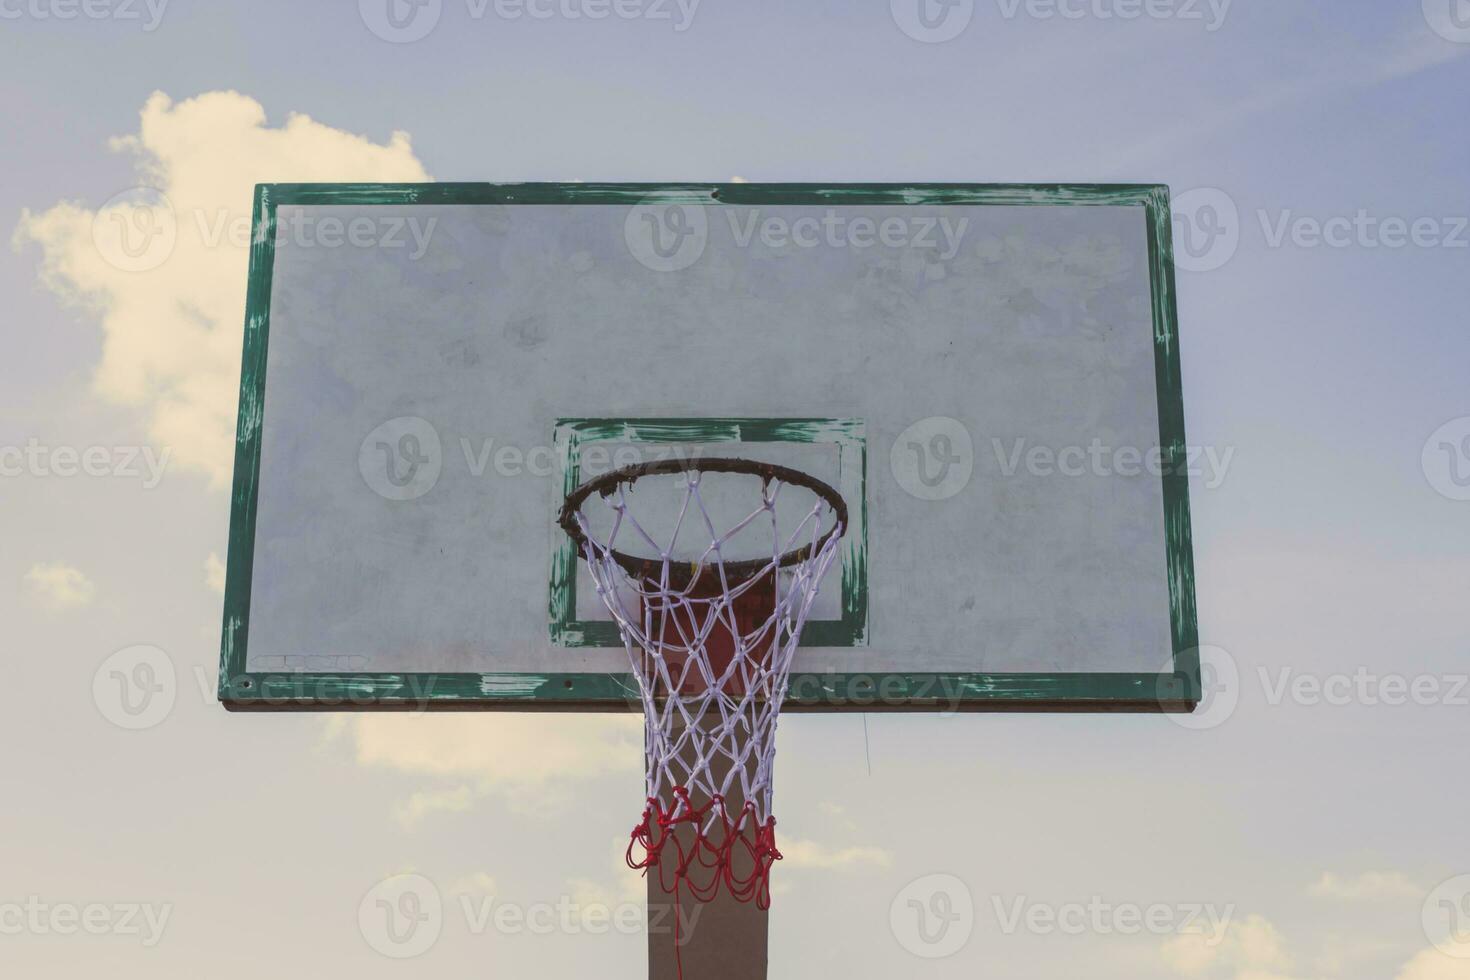 basket hoop på blå himmel foto